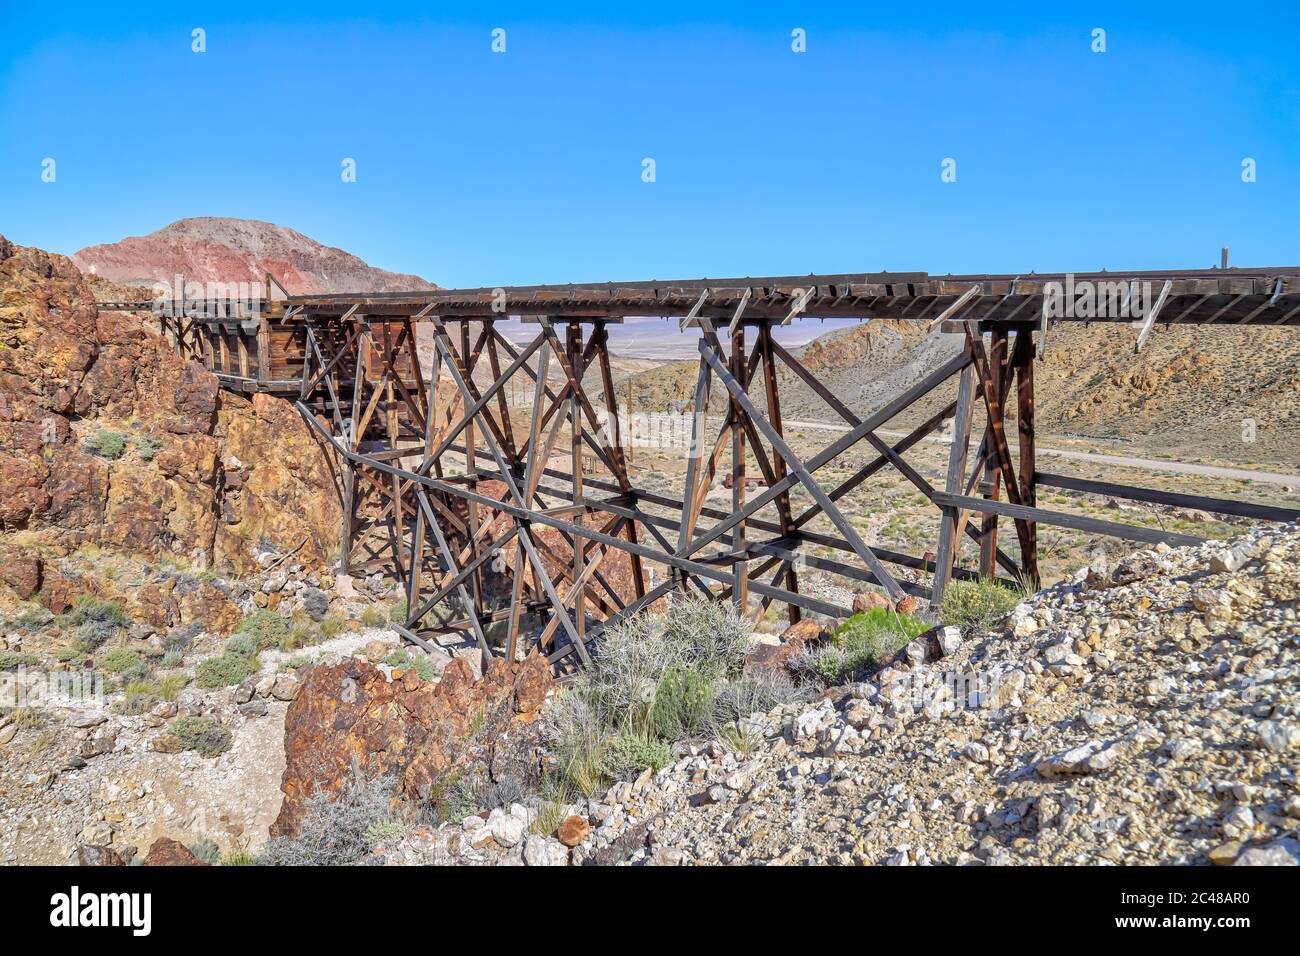 NIVLOC, NEVADA, STATI UNITI - 25 maggio 2020: Un traliccio abbandonato per i carri minerari è uno dei principali punti di interesse per l'estrazione dell'oro Foto Stock